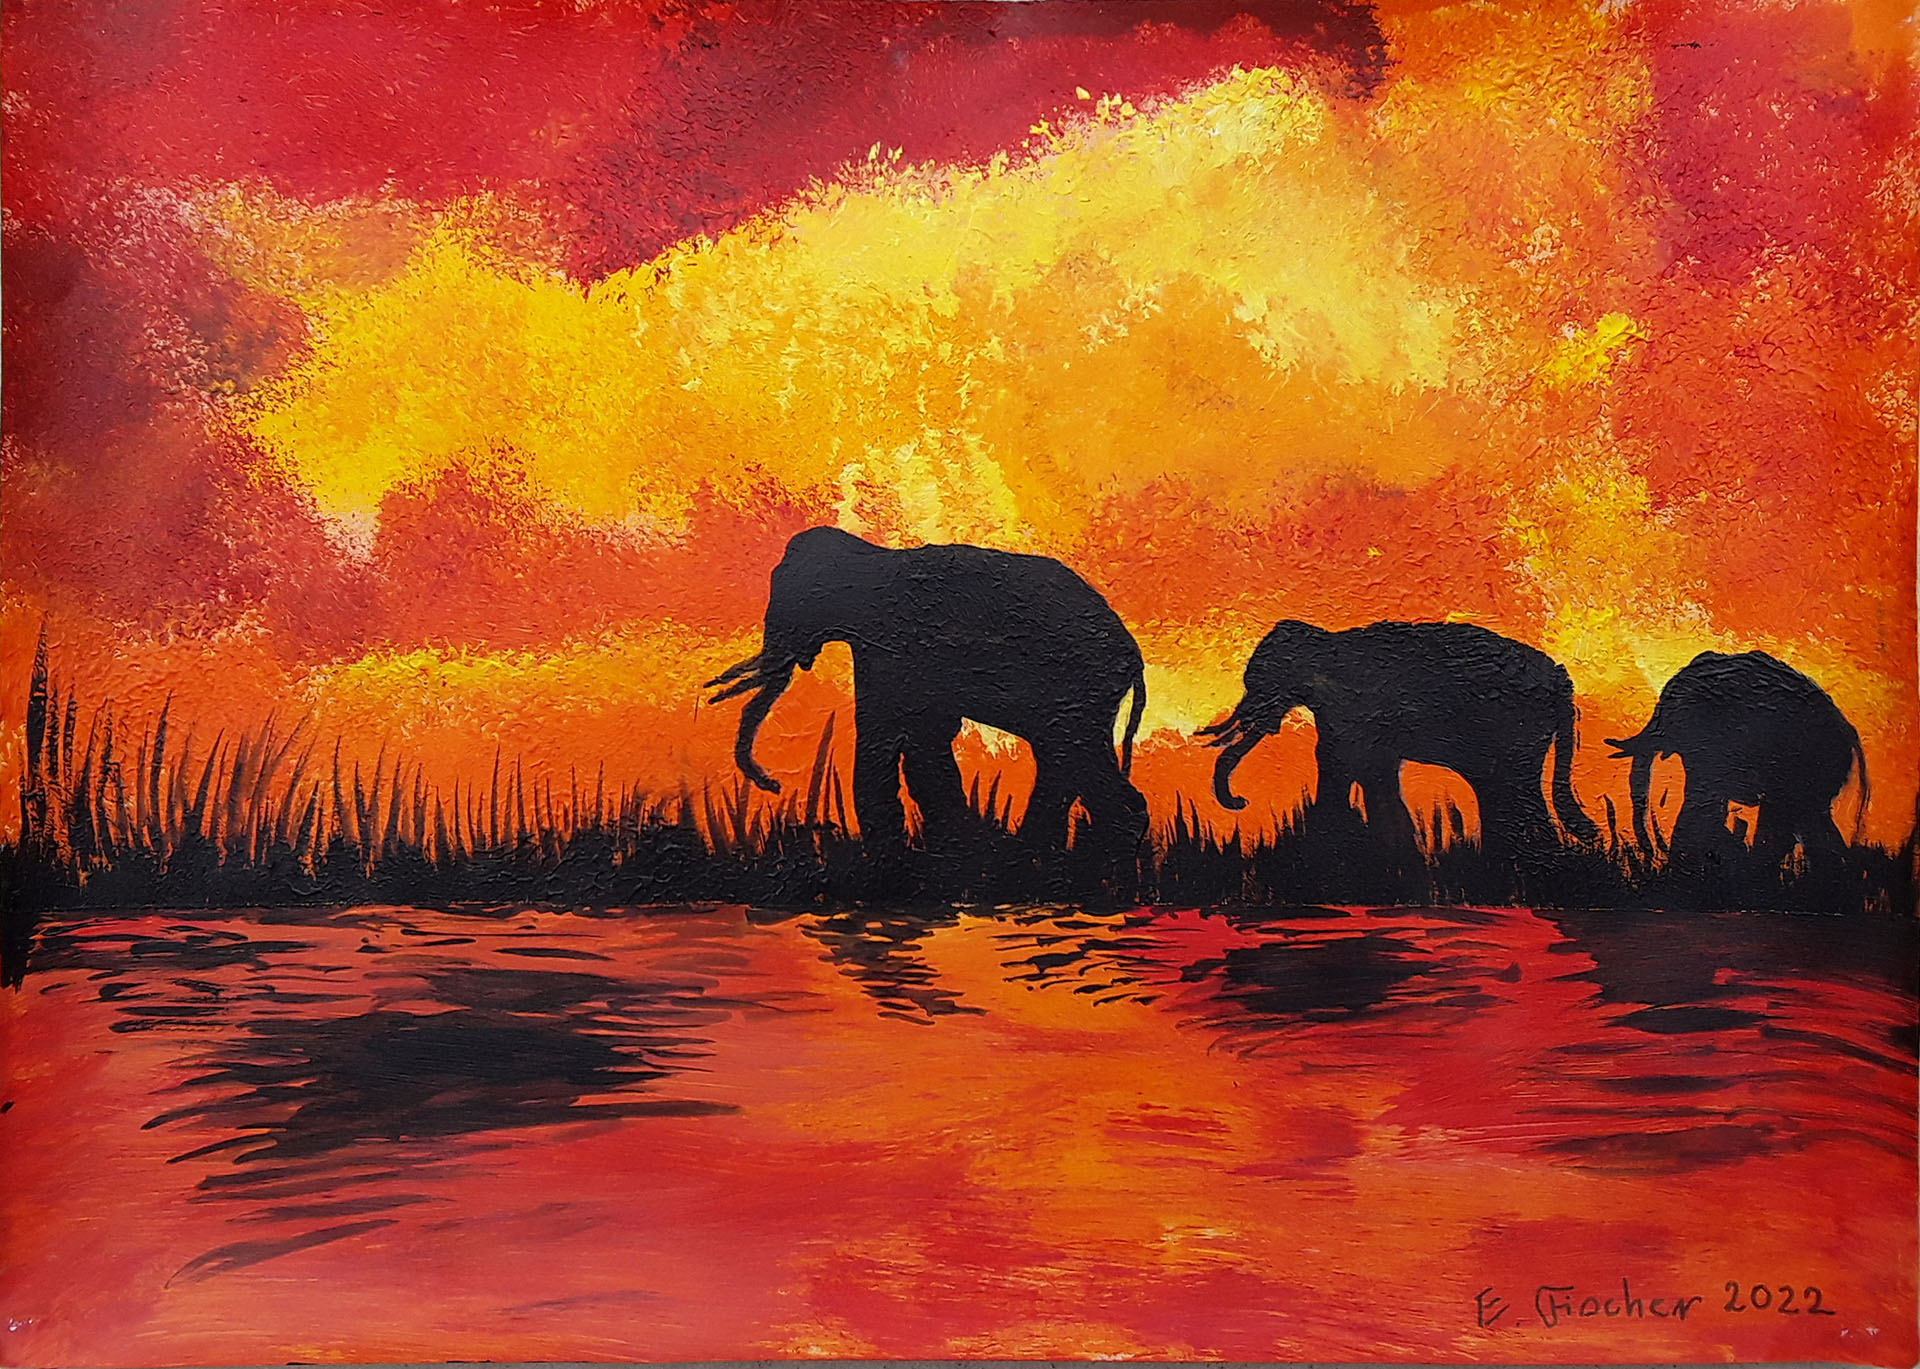 Gemälde von Elsbeth Fischer 2022 - Elefanten